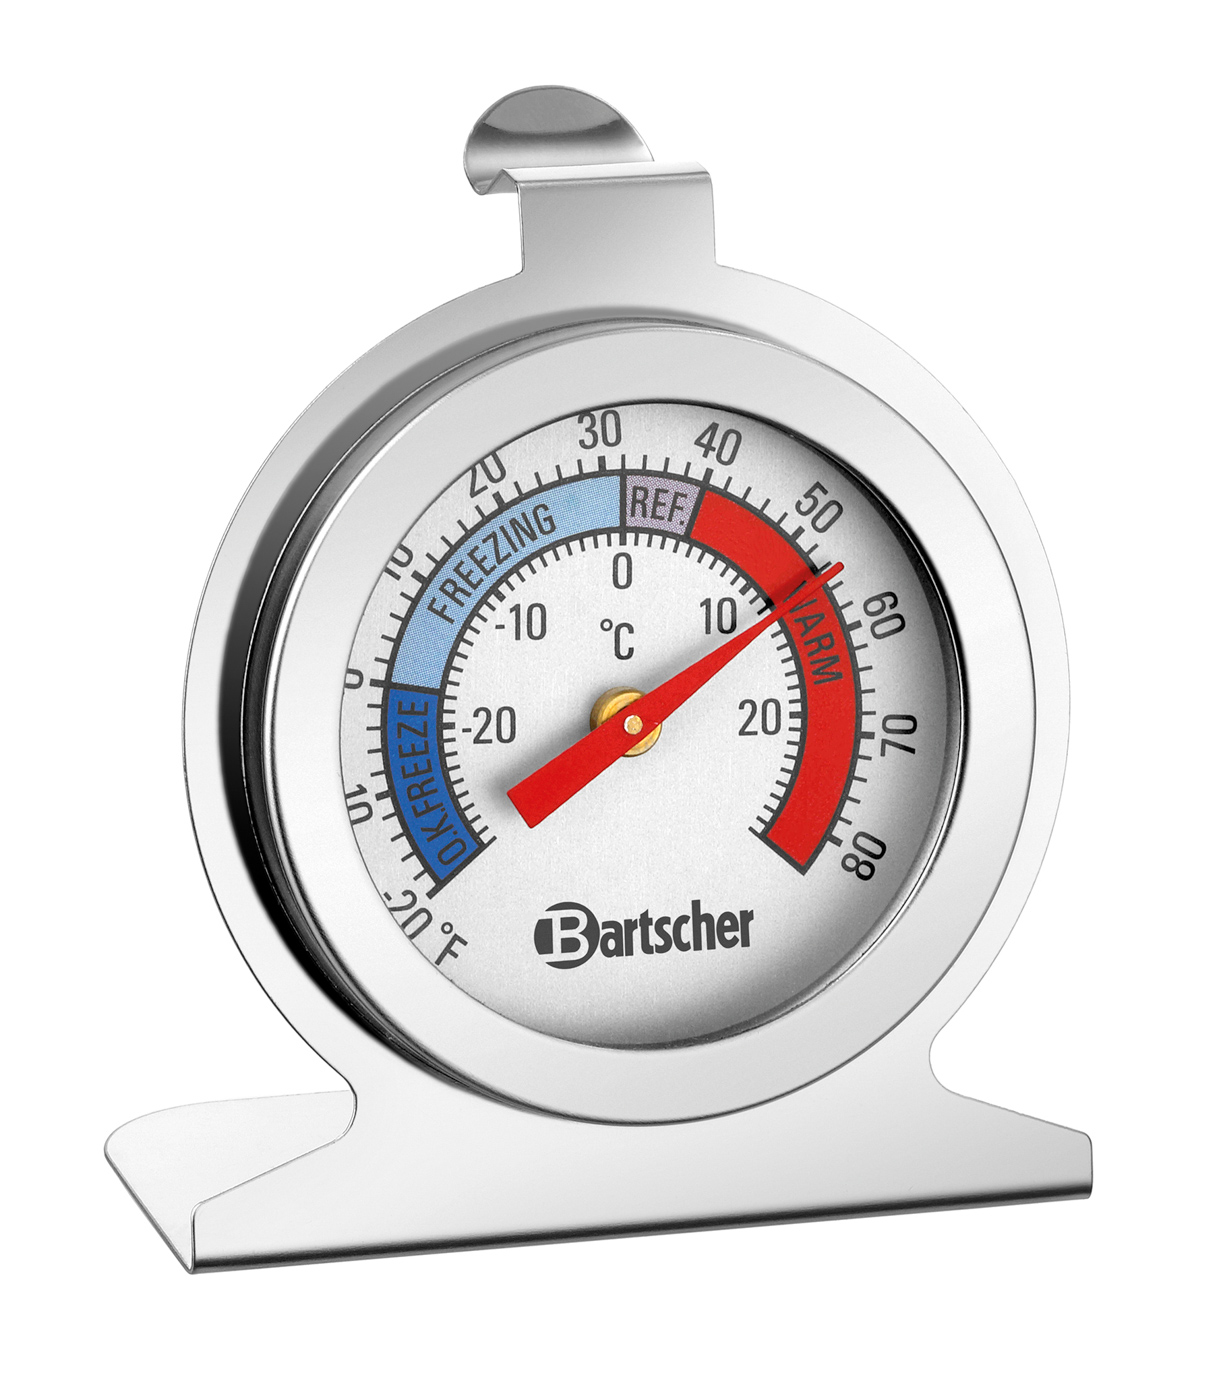 Bartscher Thermometer A300 | Eigenschaften: Temperaturbereich auch in Fahrenheit ,Zum Hängen oder Stellen | Maße: 6,2 x 3,5 x 71 cm. Gewicht: